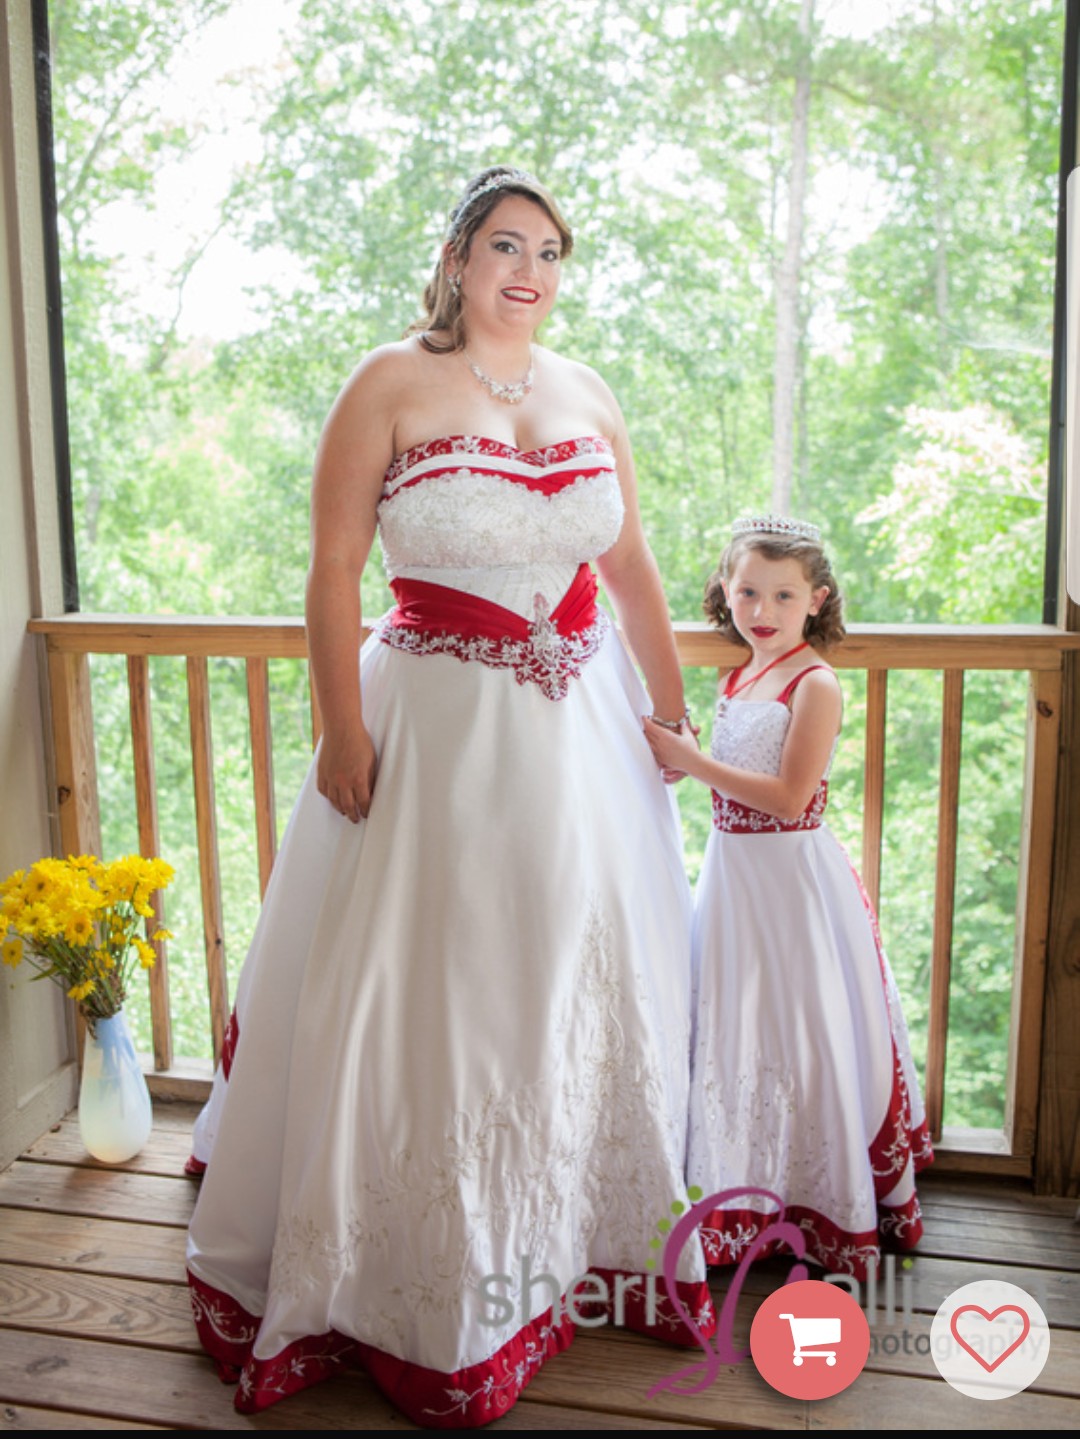 white and apple red flower girl wedding dresses